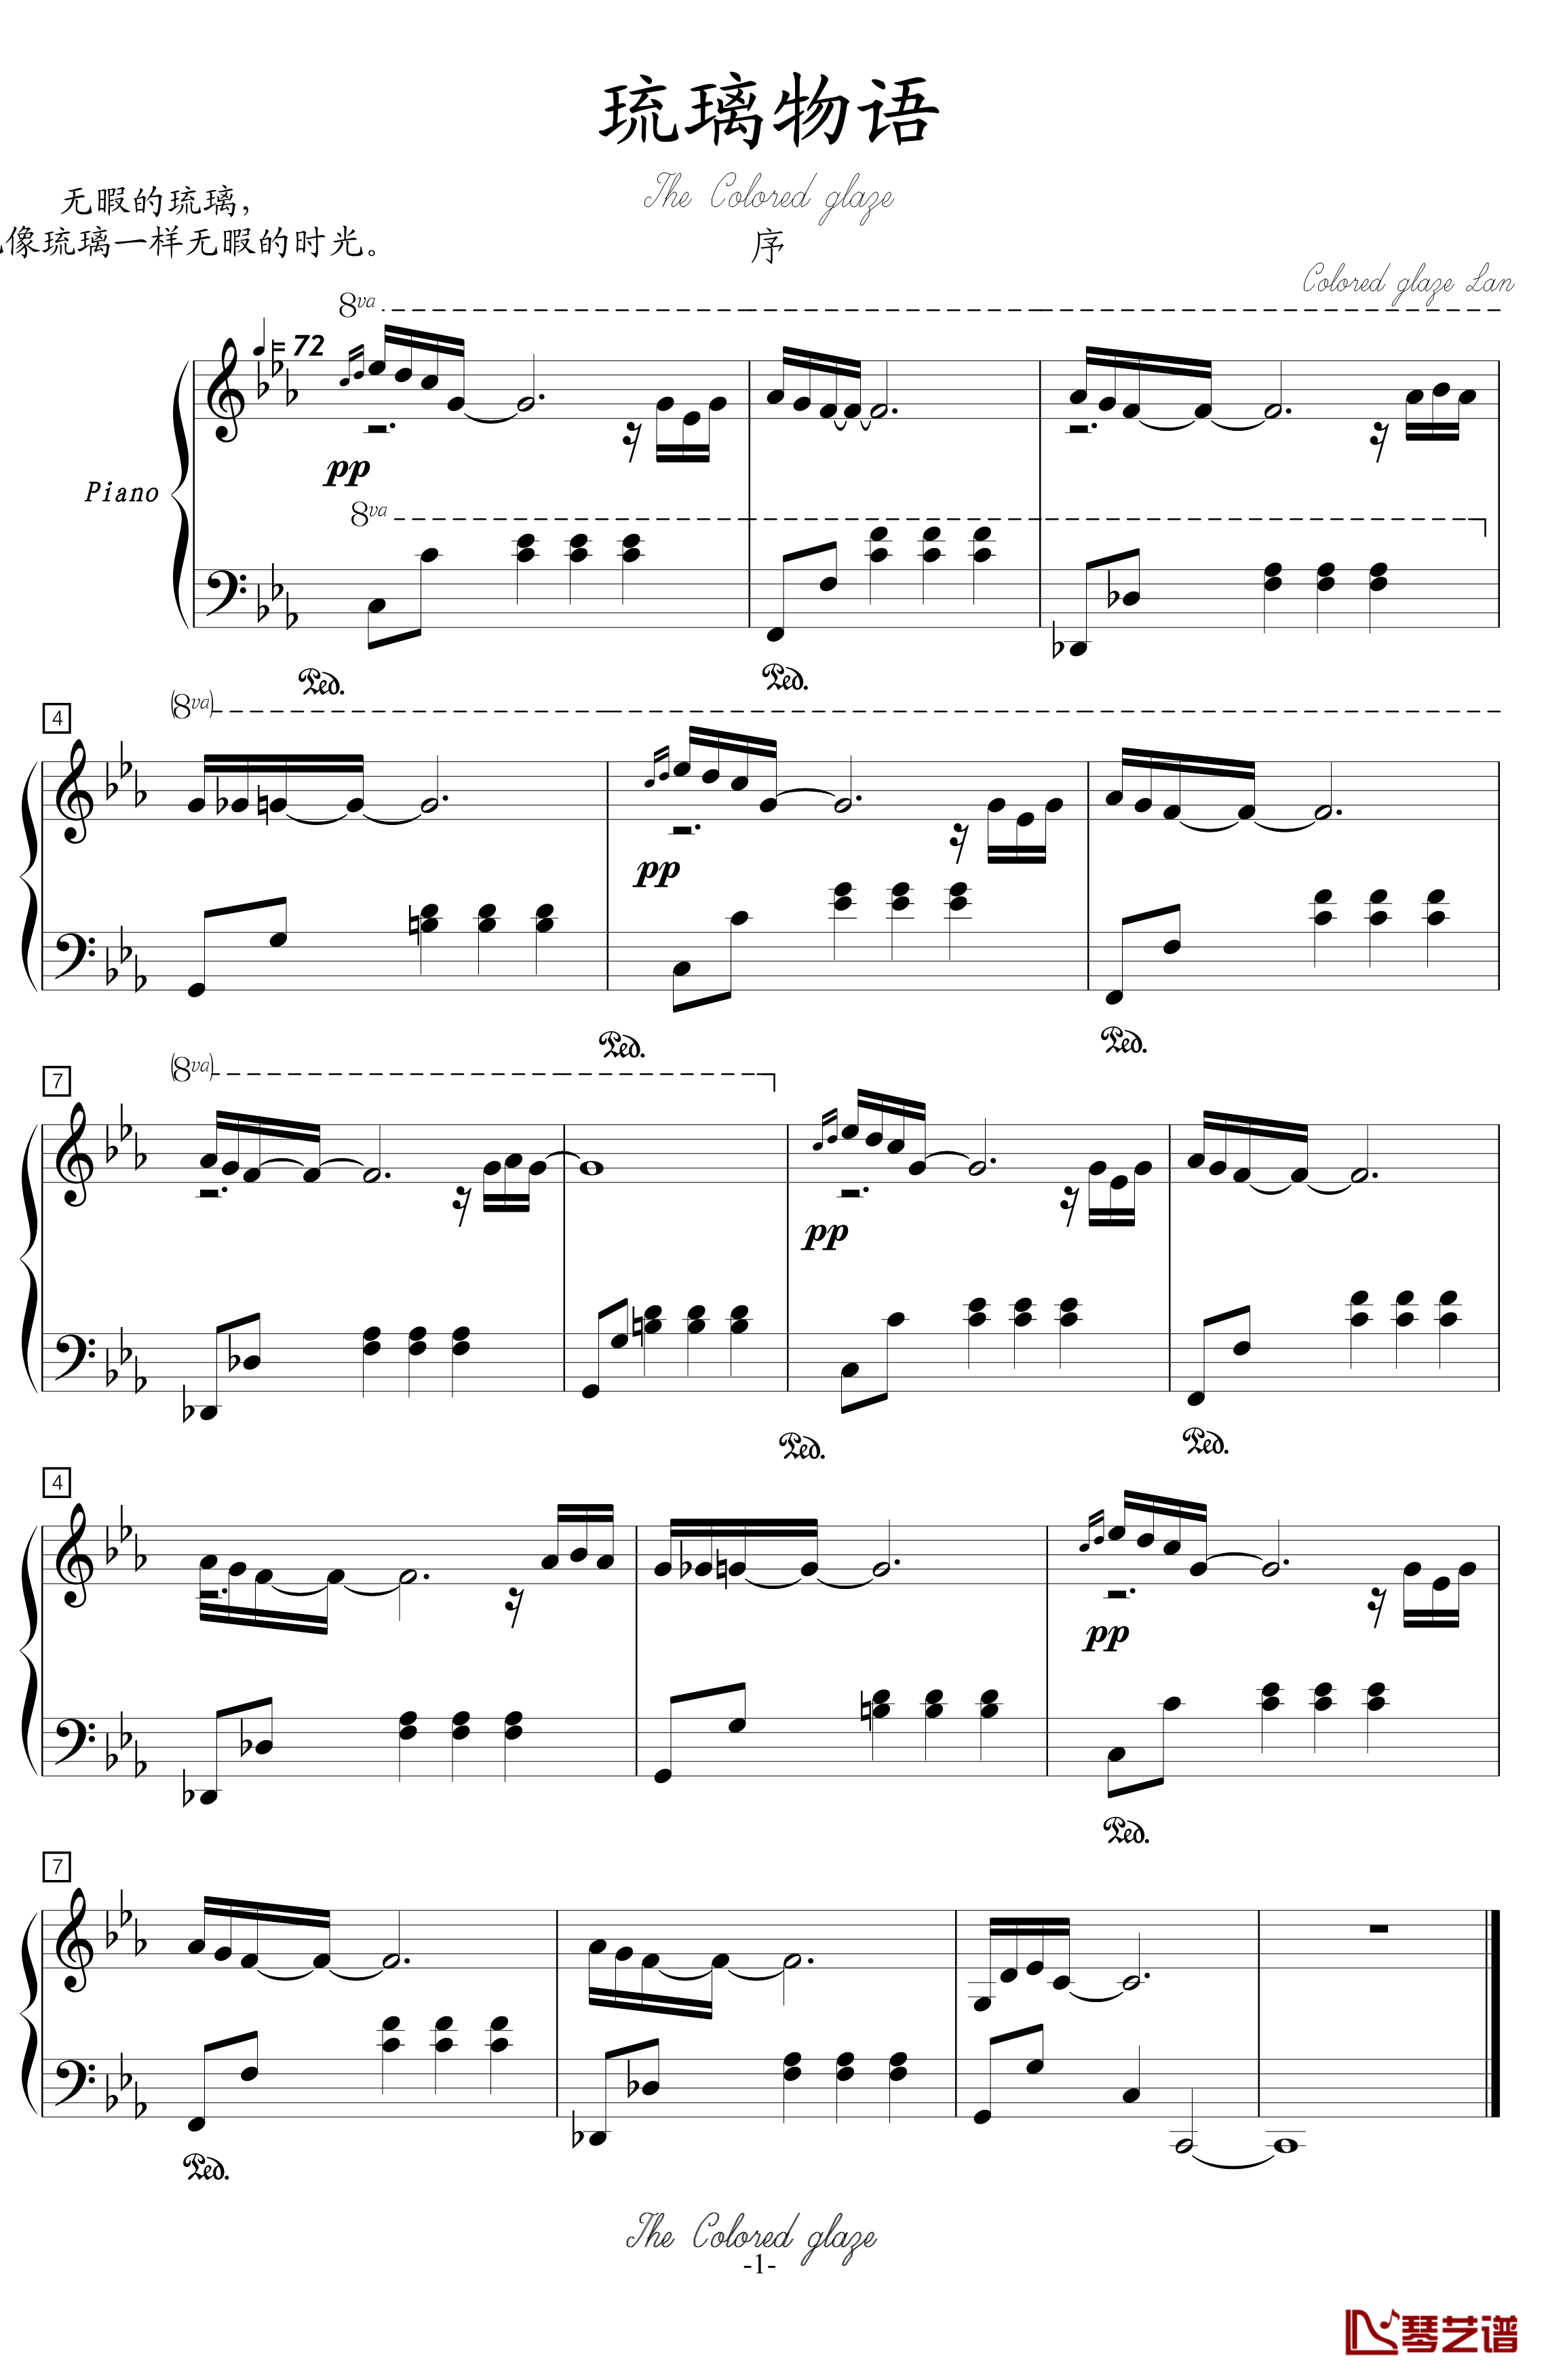 琉璃物语钢琴谱-序-琉璃岚1